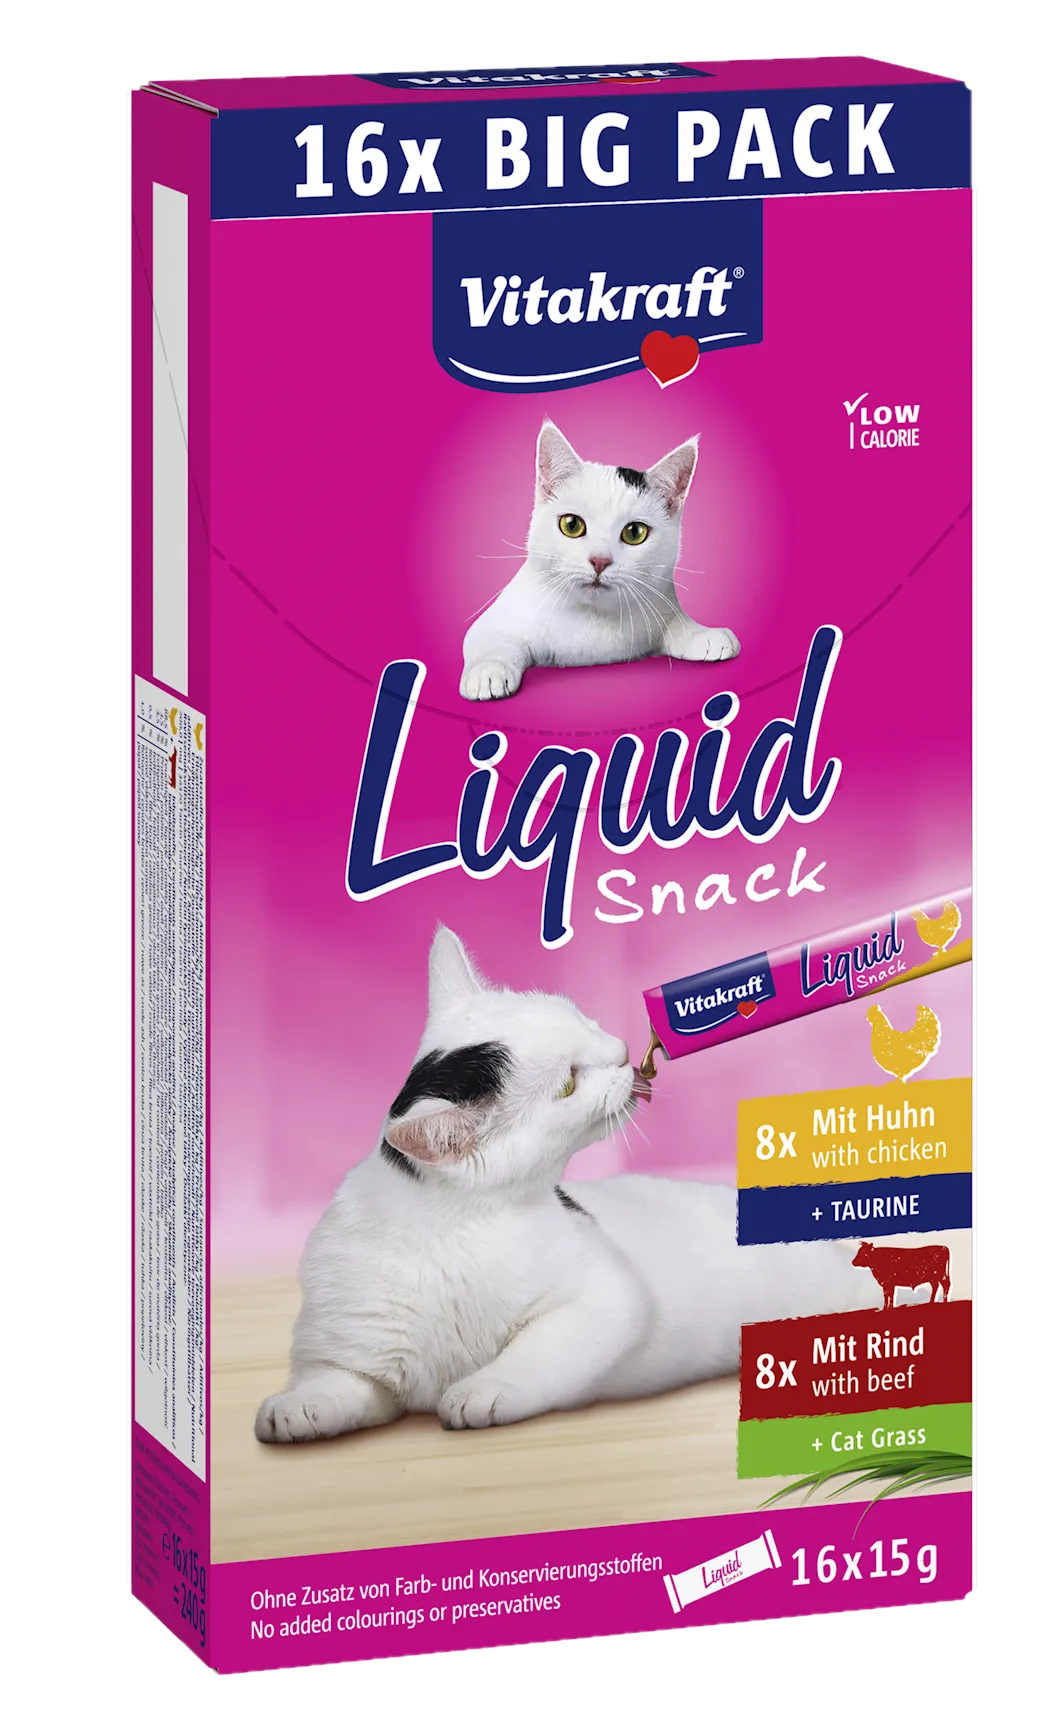 Liquid Snack Multipack 16x15 g